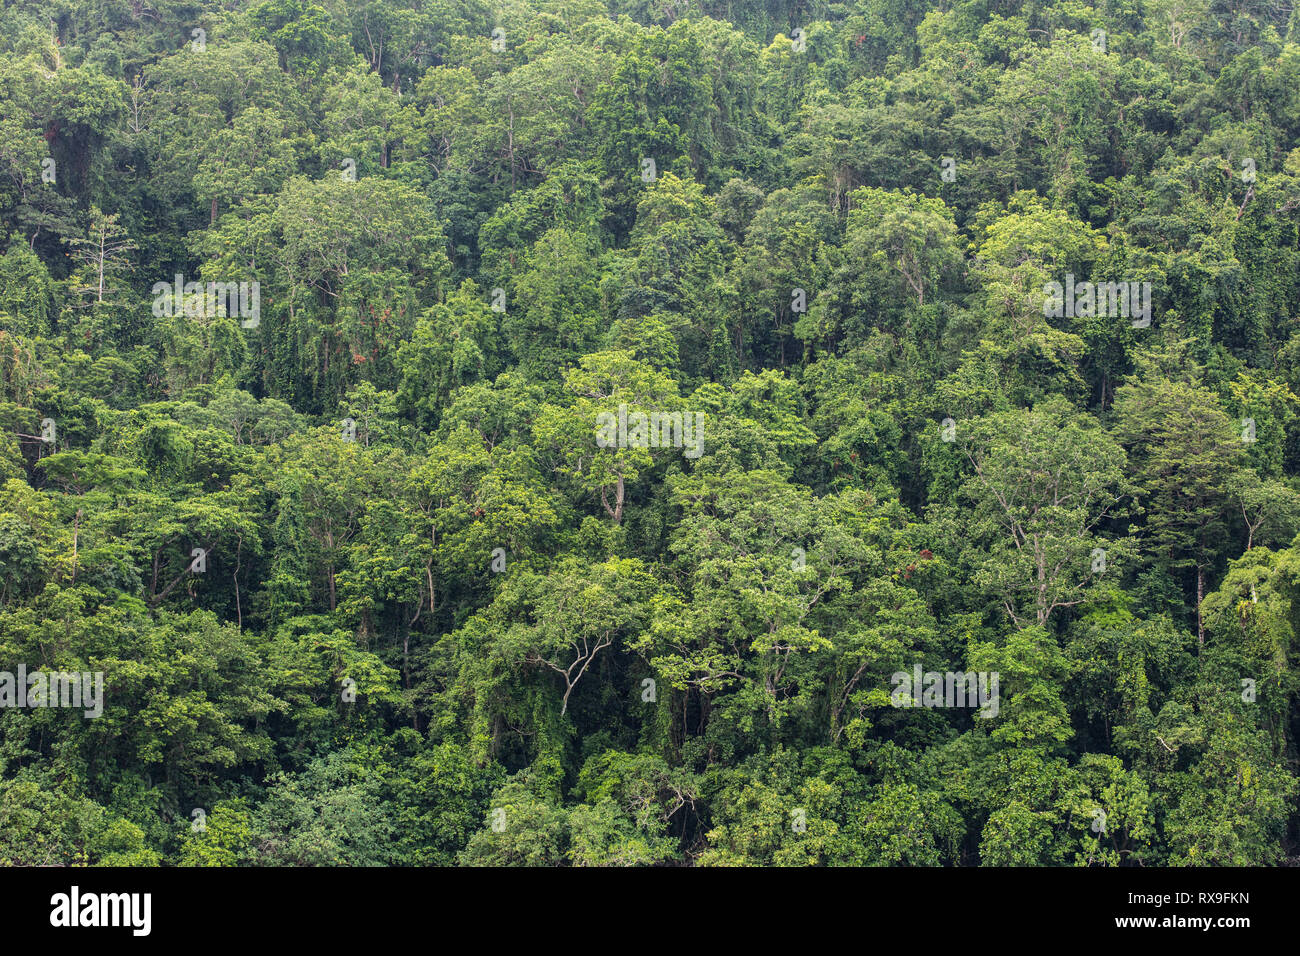 La lussureggiante foresta pluviale cresce sull isola di nuovo la Gran Bretagna in Papua Nuova Guinea mostra. Questa remota zona tropicale è nota per la sua alta biodiversità. Foto Stock